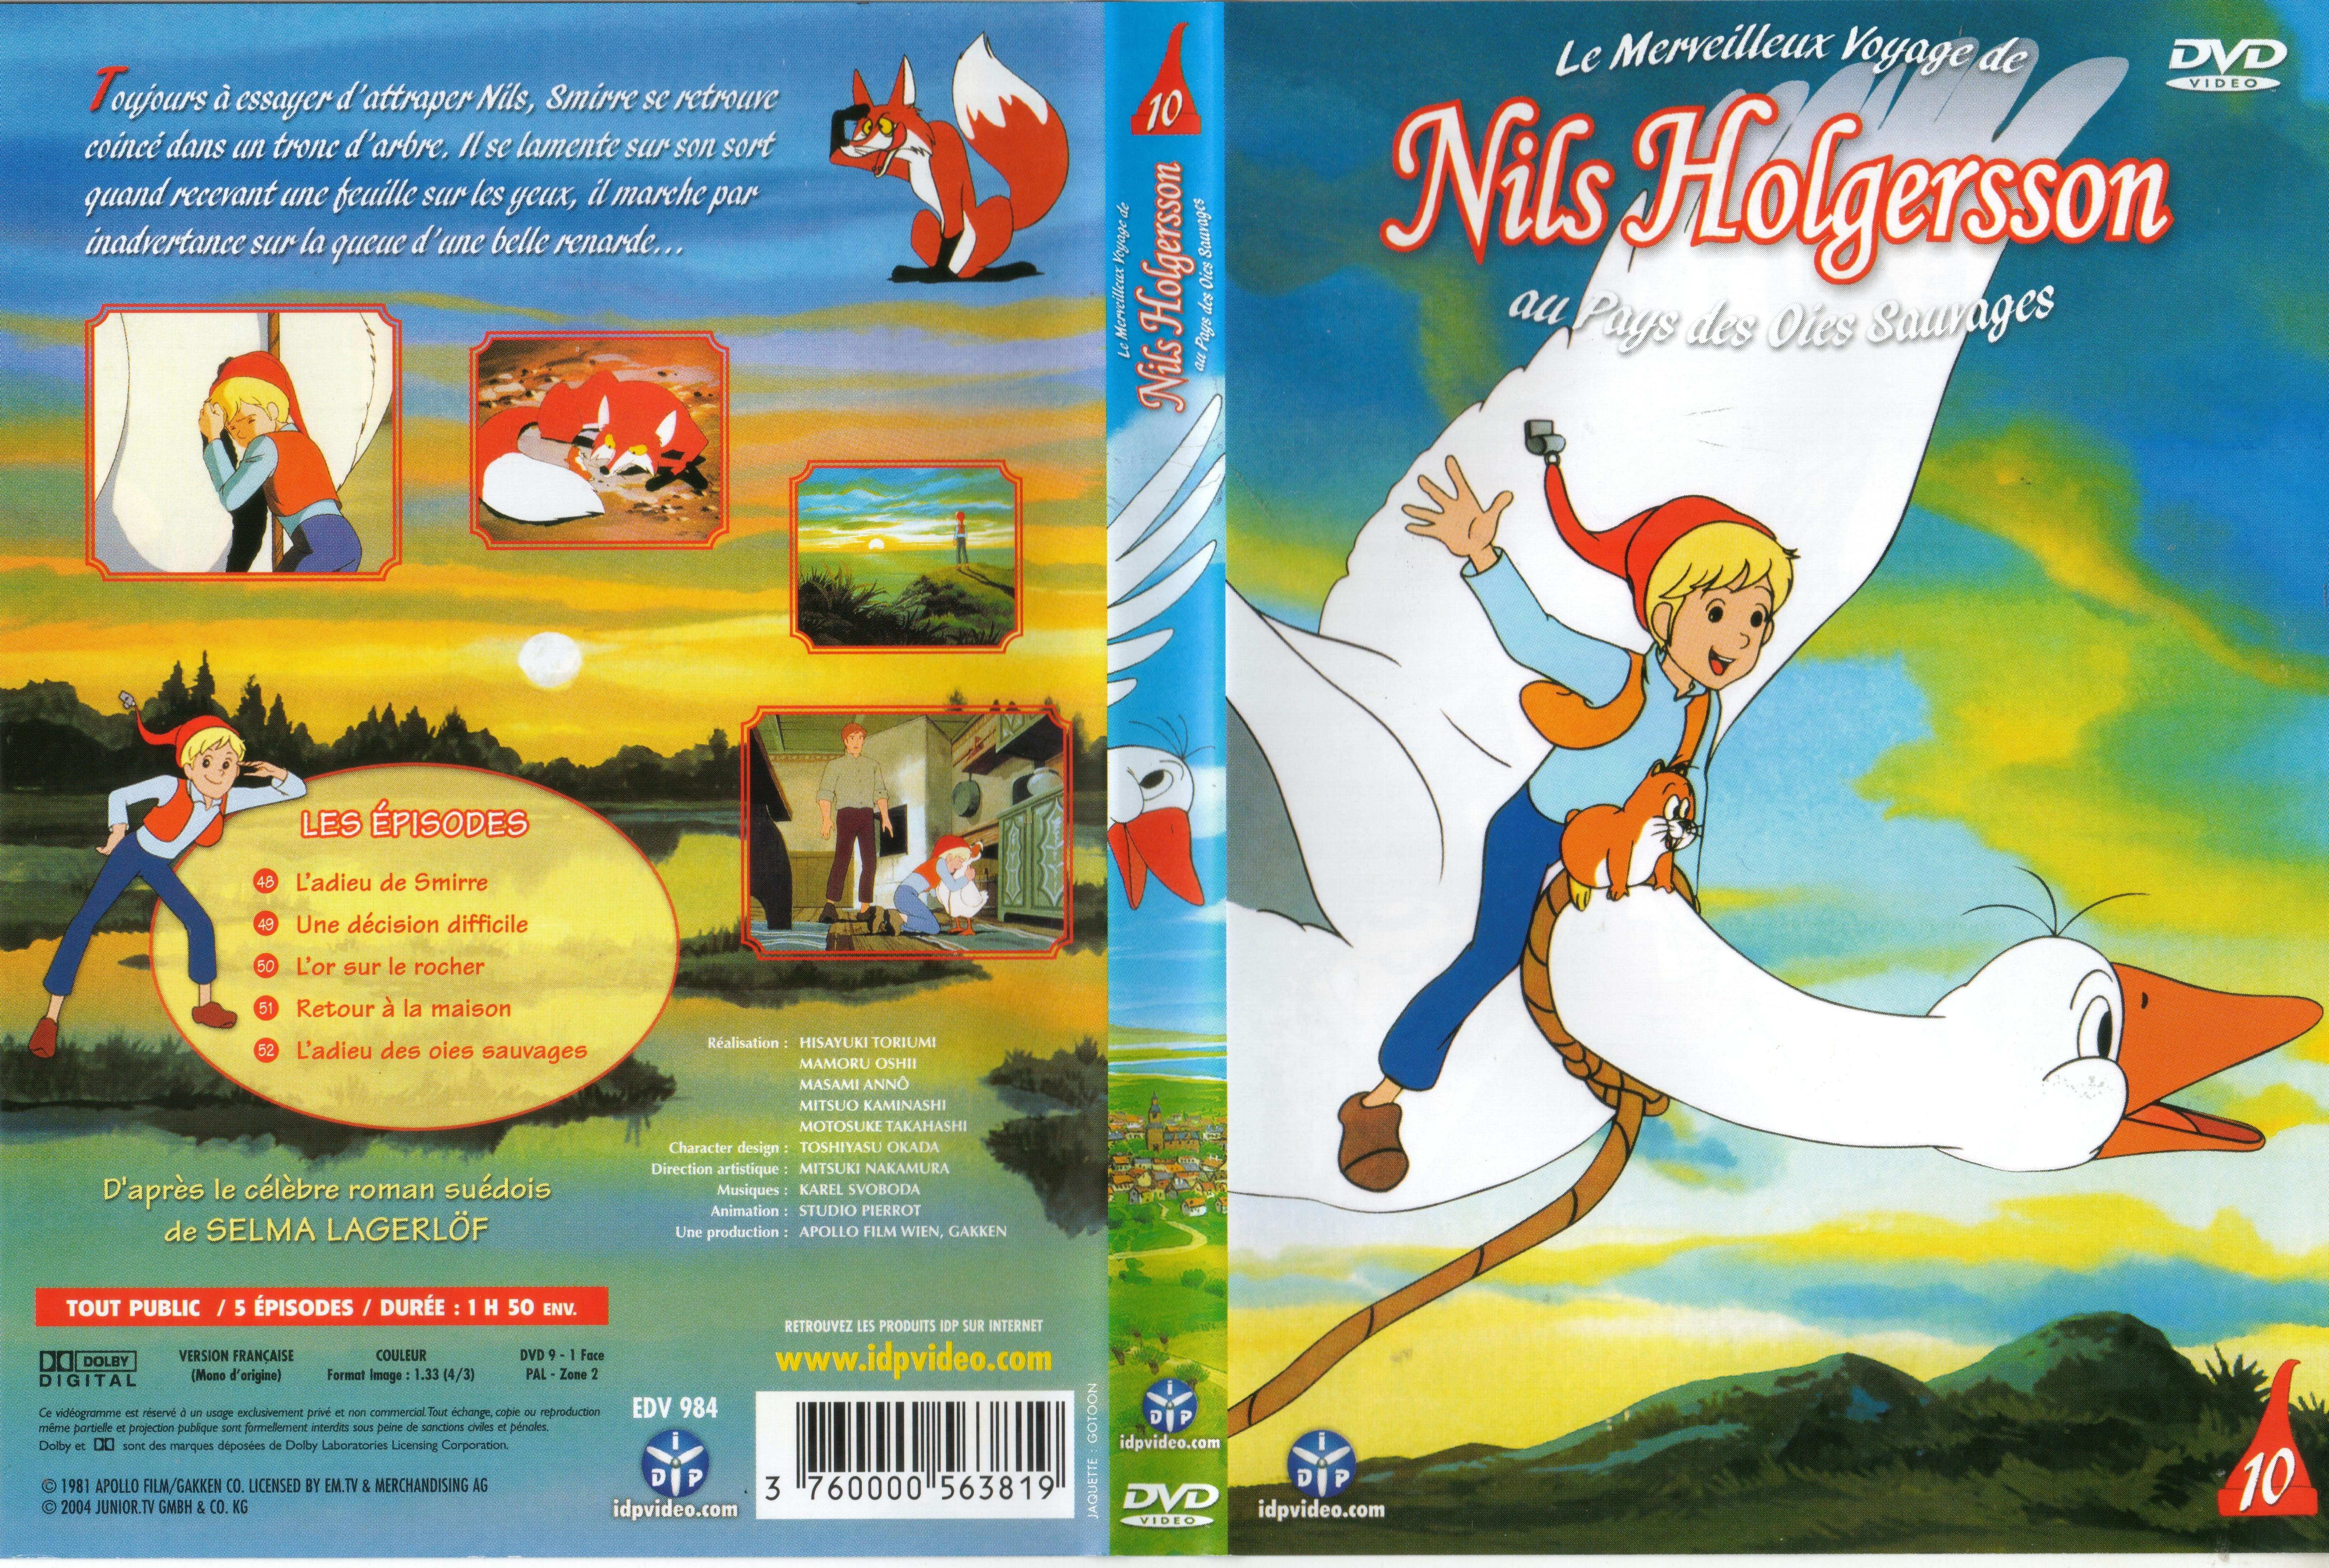 Jaquette DVD Nils Holgersson vol 10